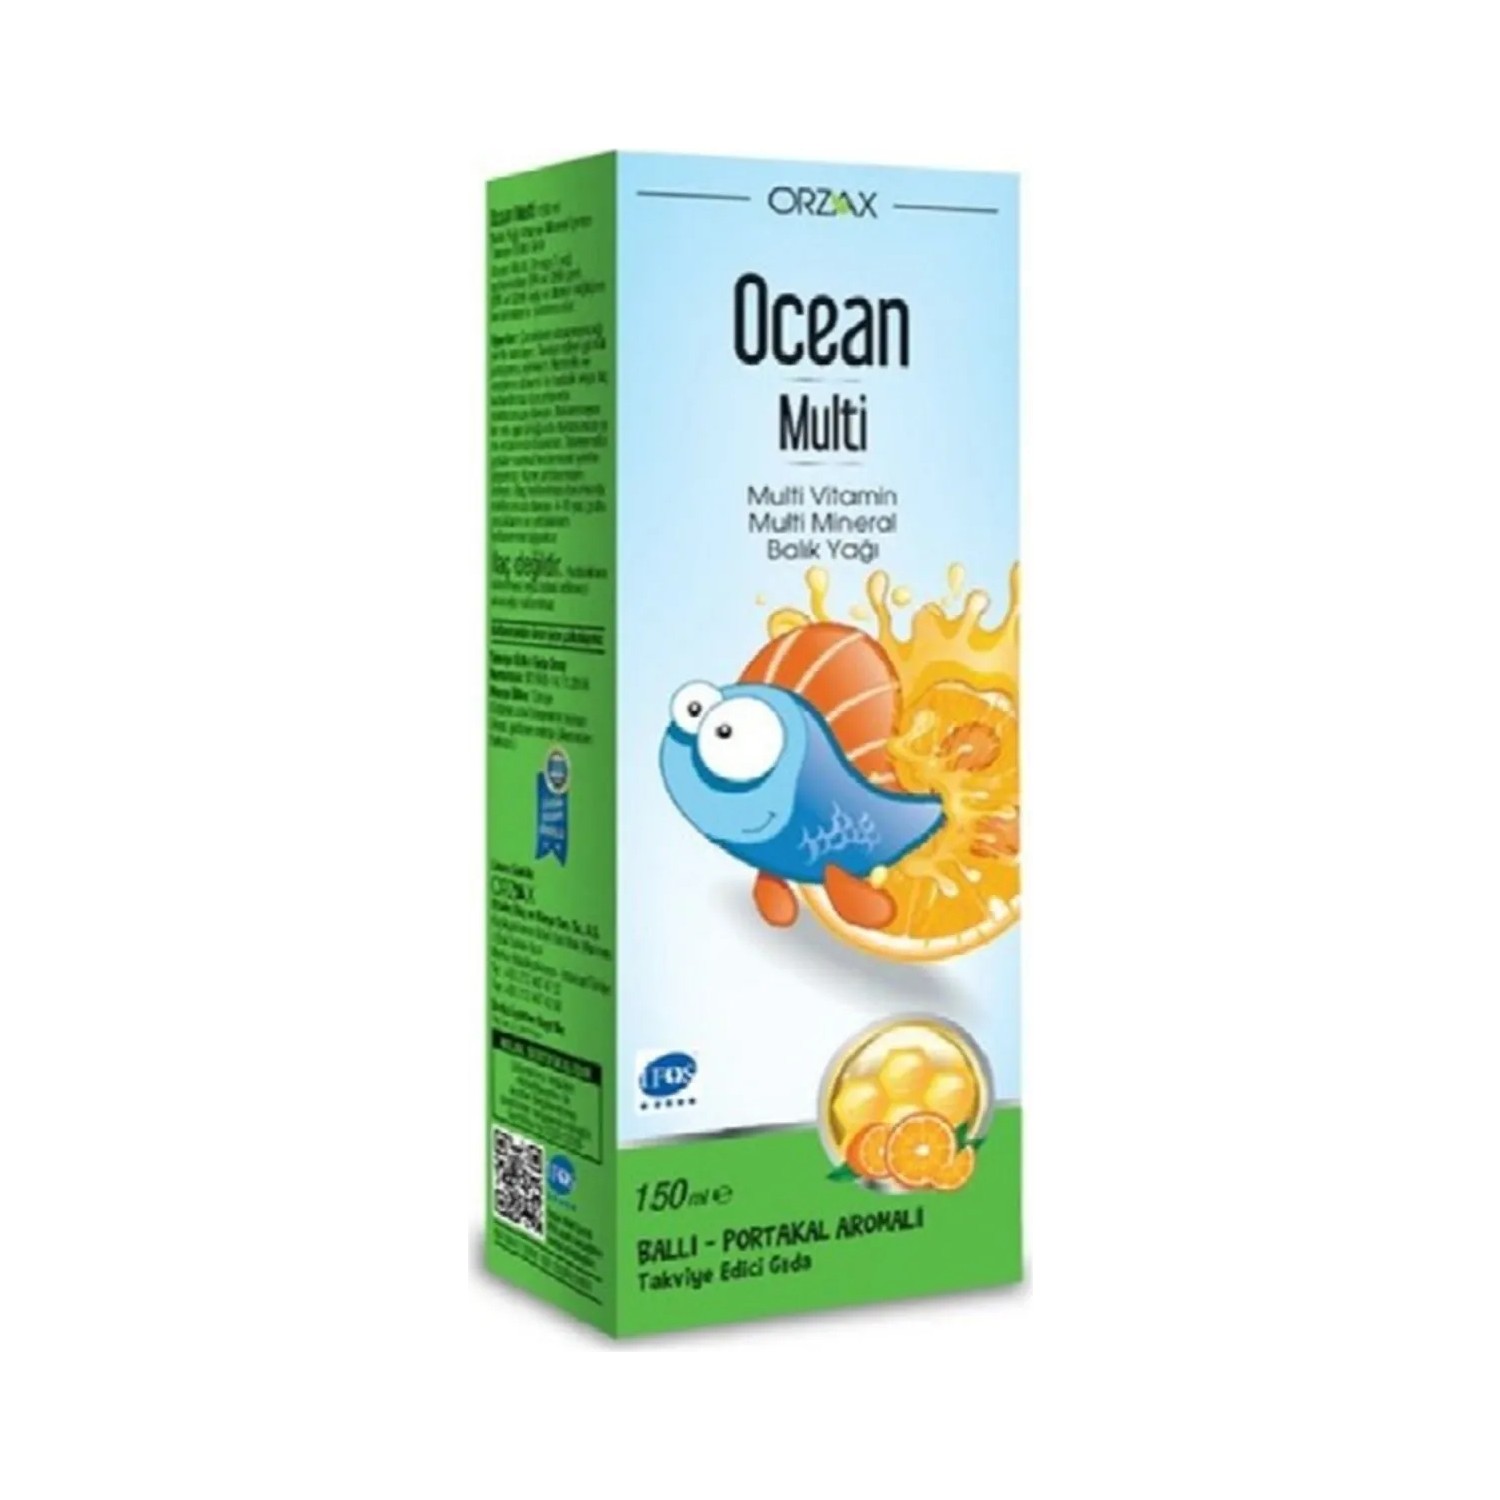 Концентрированный сироп Ocean Multi со вкусом меда и апельсина, 150 мл children s cough syrup dark honey natural grape flavor 4 fl oz 118 ml